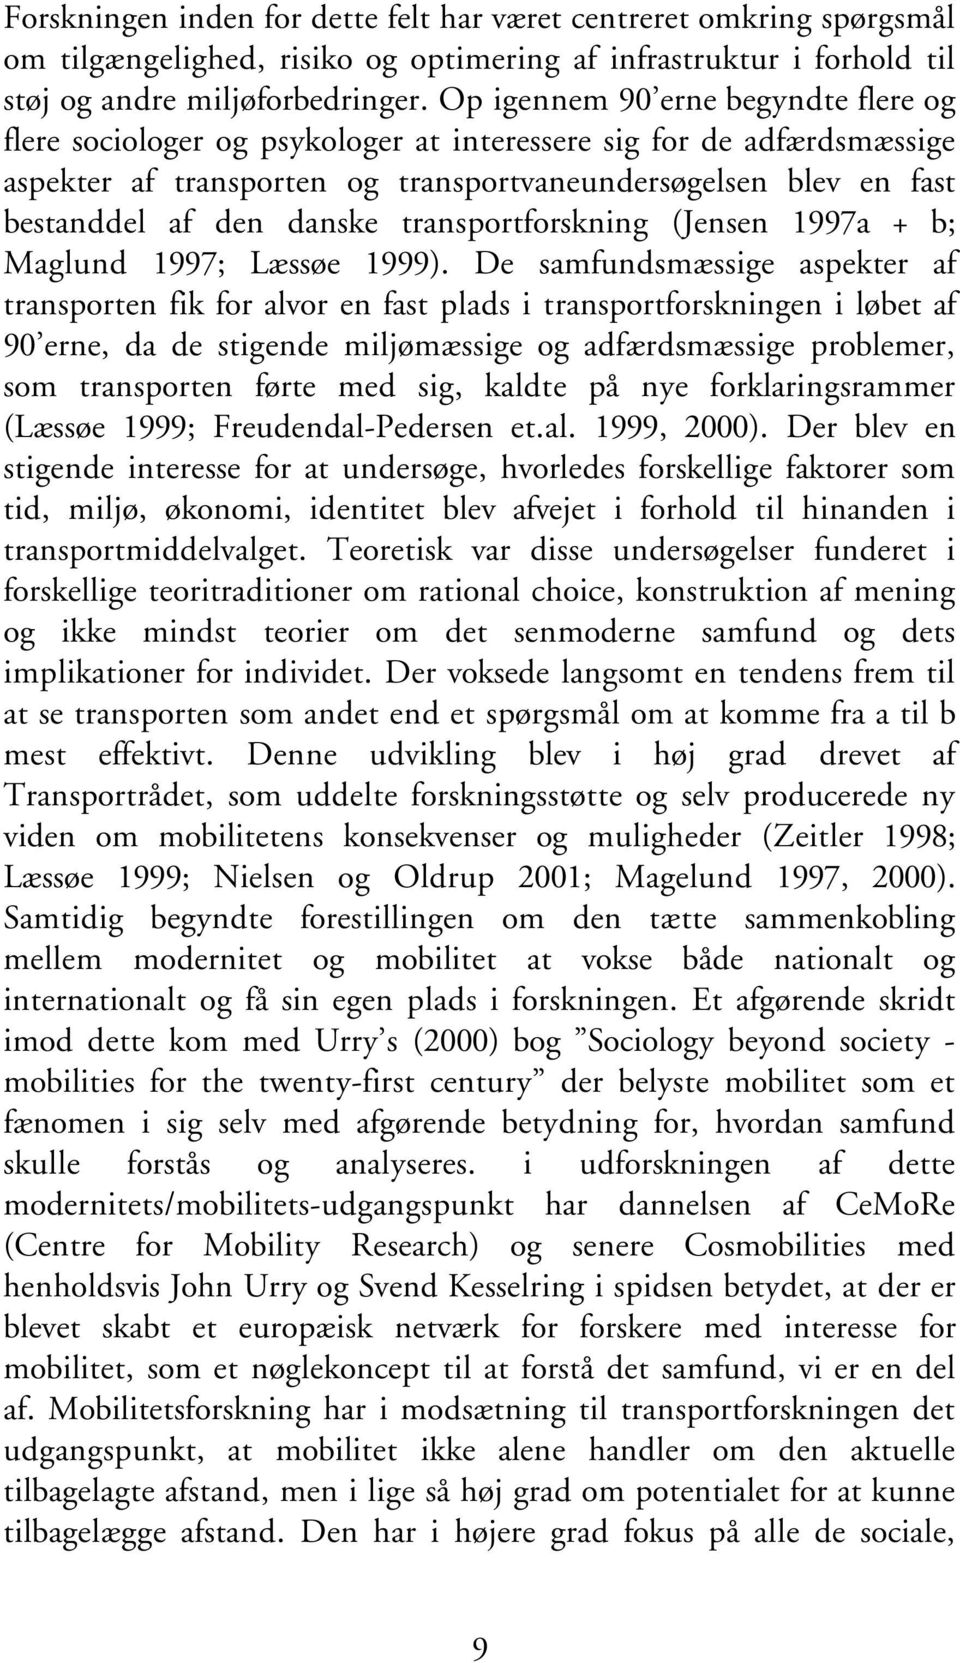 danske transportforskning (Jensen 1997a + b; Maglund 1997; Læssøe 1999).